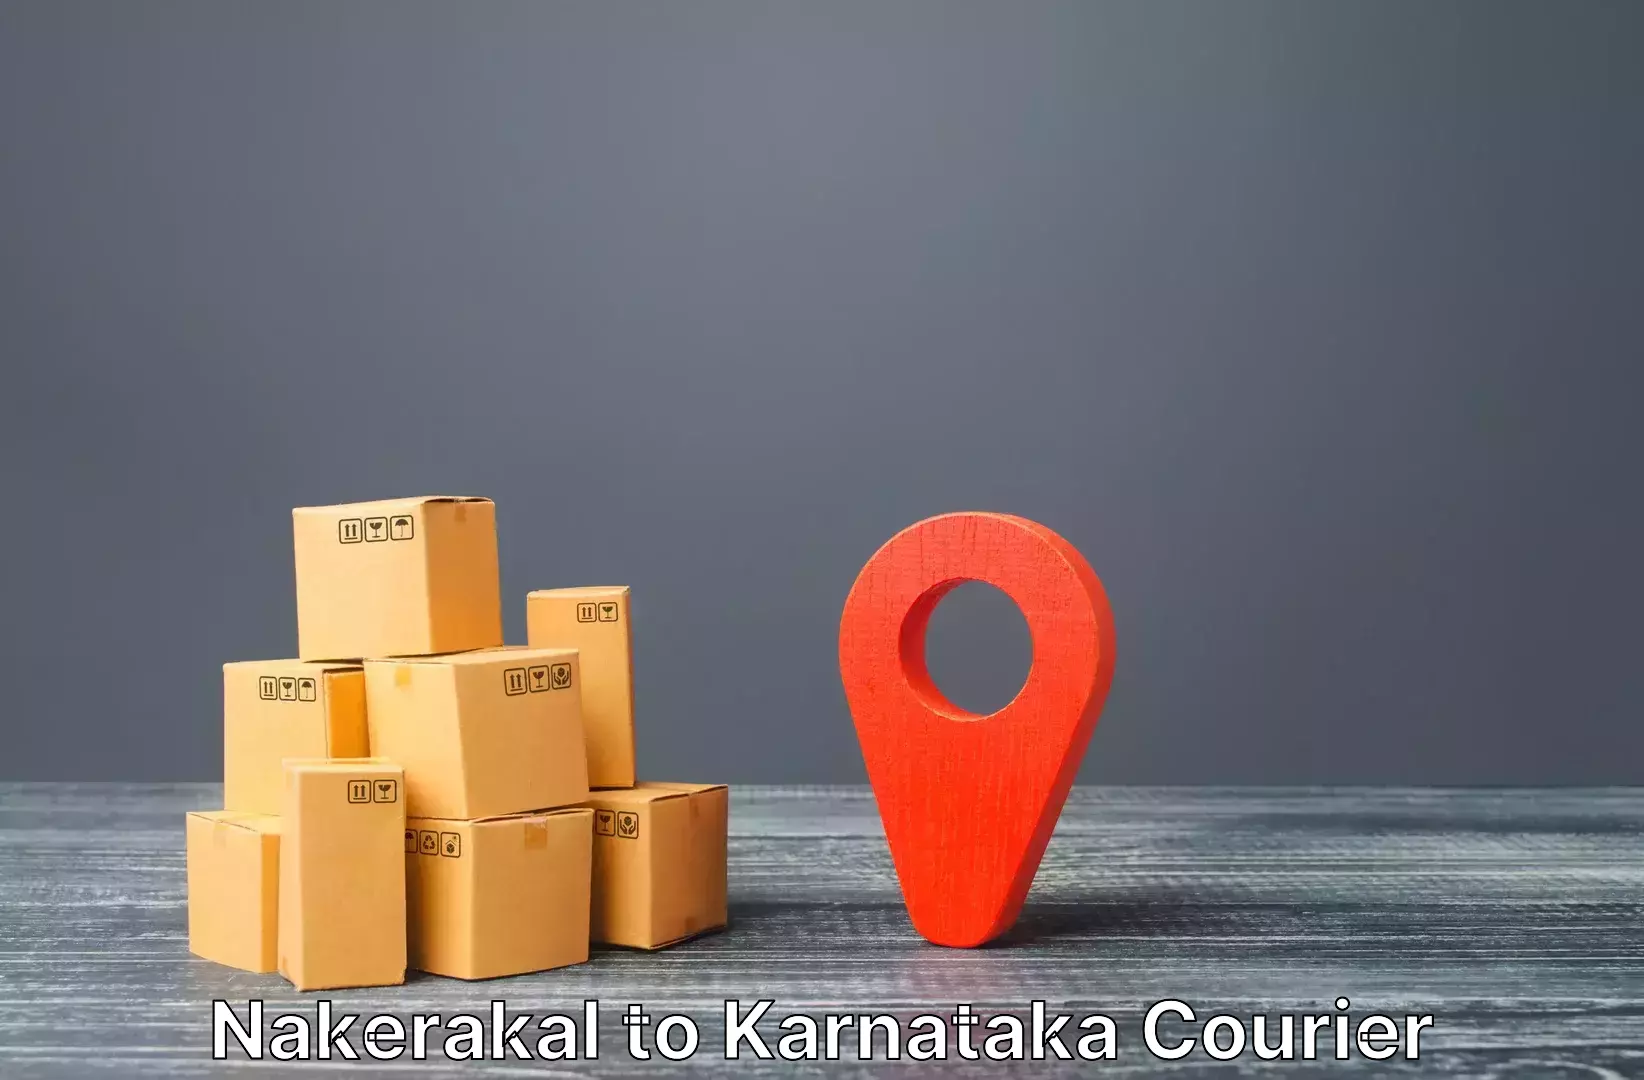 Group luggage shipping Nakerakal to Yellare